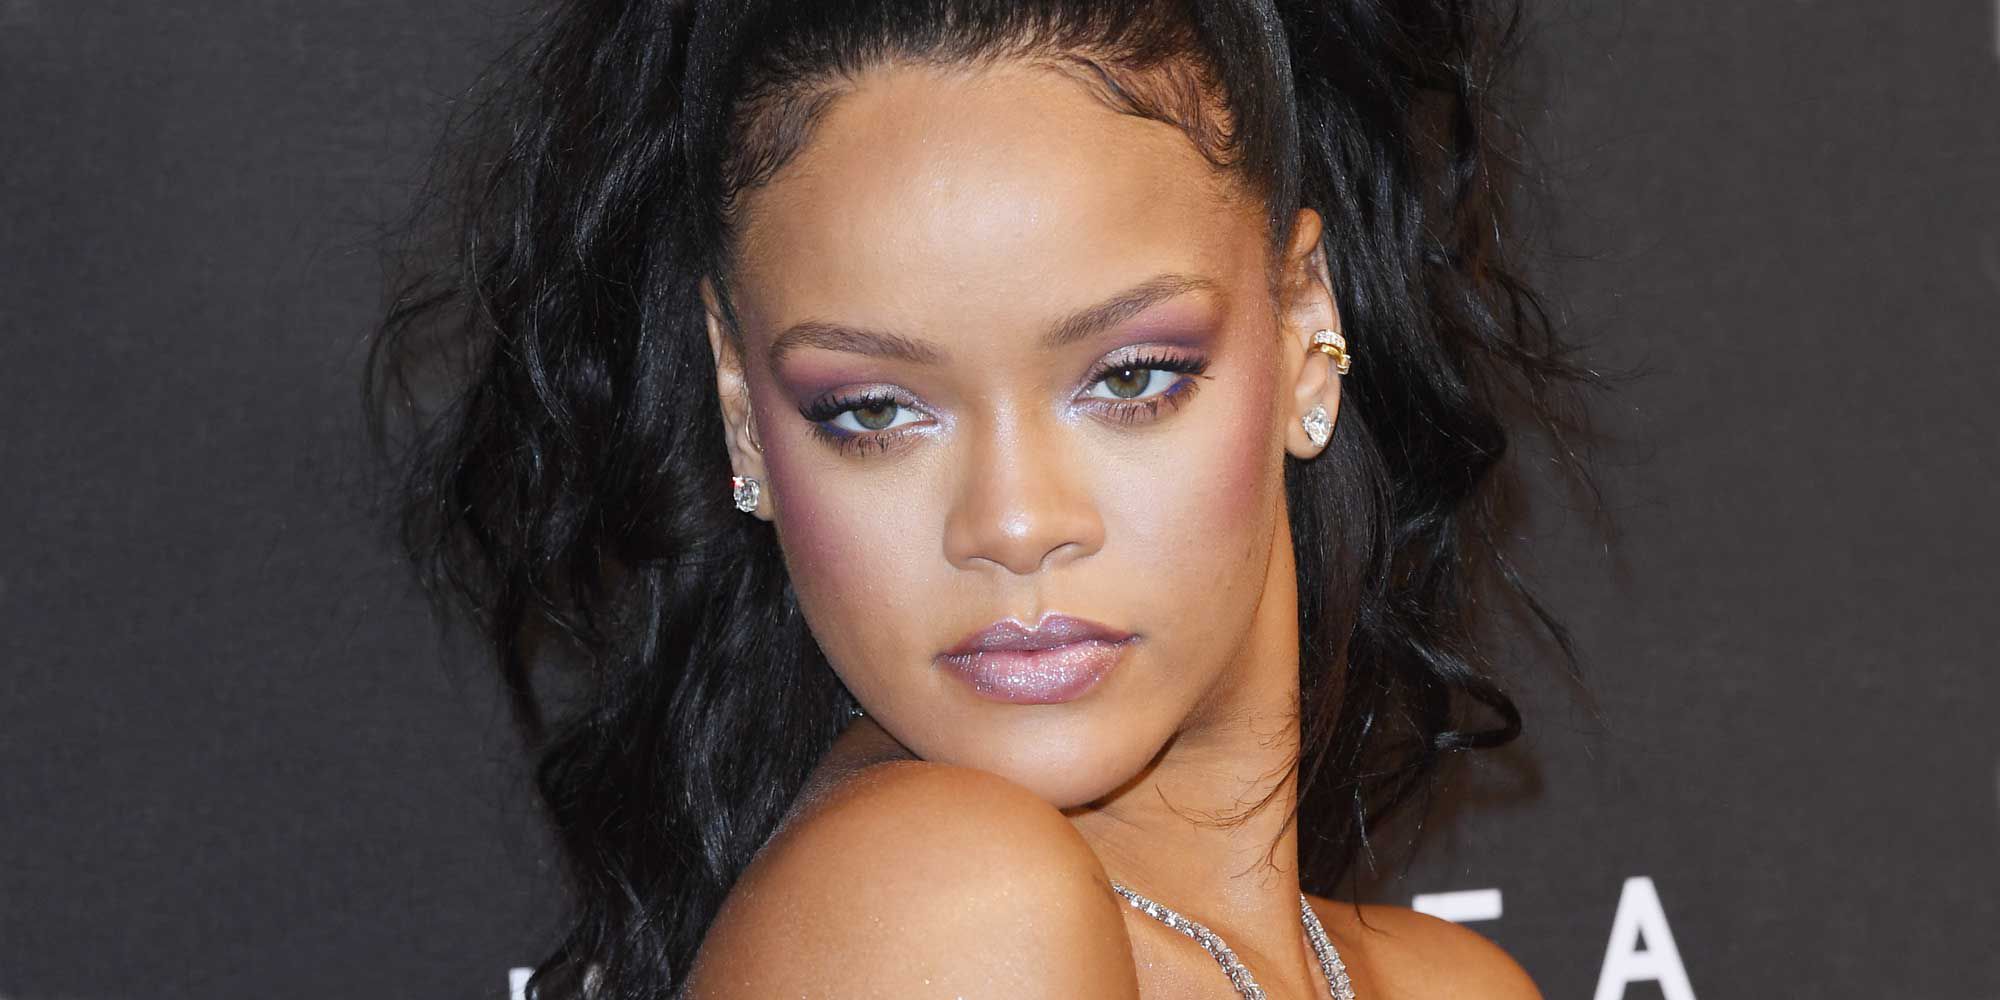 Νέα αισθησιακή σειρά εσωρούχων από την Rihanna (φωτό)